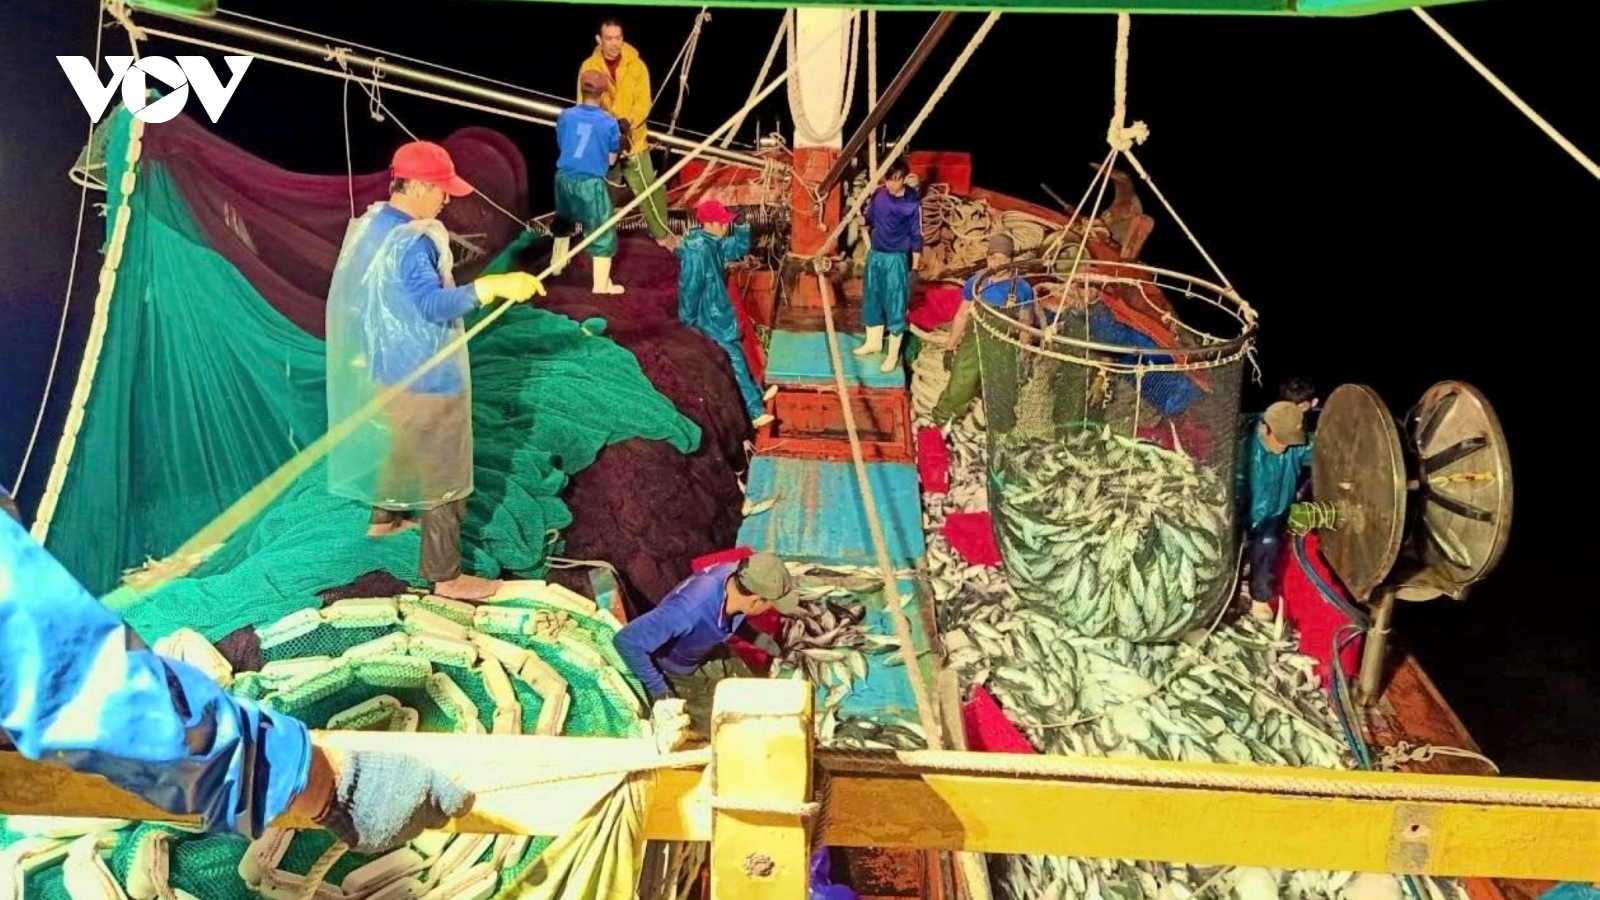 Ngư dân Quảng Bình trúng đậm 250 tấn cá nục, thu 2,4 tỷ đồng